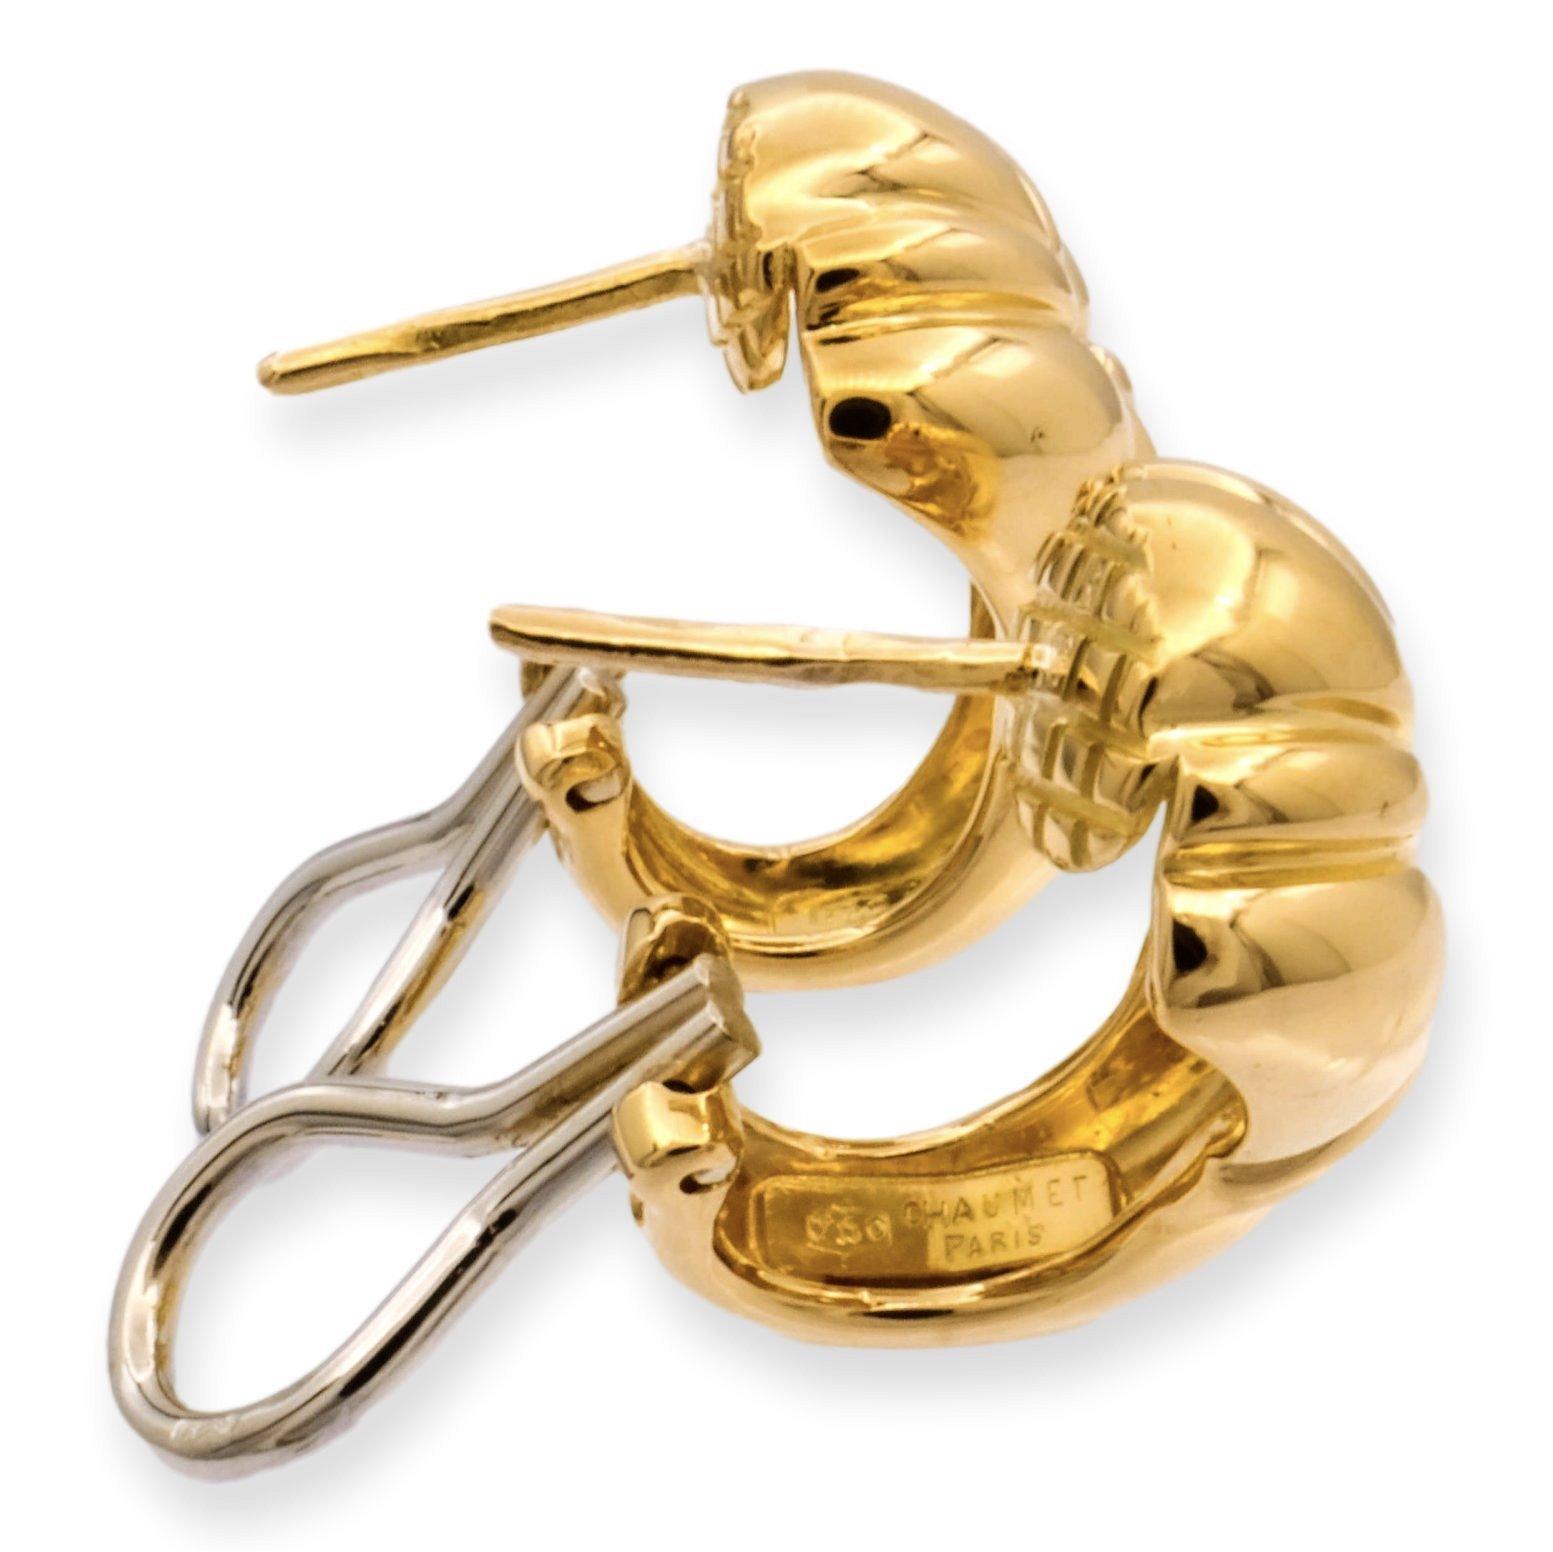 Une paire de boucles d'oreilles classique signée par CHAUMET, finement réalisée en or jaune 18 carats poli, dans un design épais avec des attaches à clip oméga et des poteaux. ( Les messages peuvent être supprimés sur demande). Les boucles